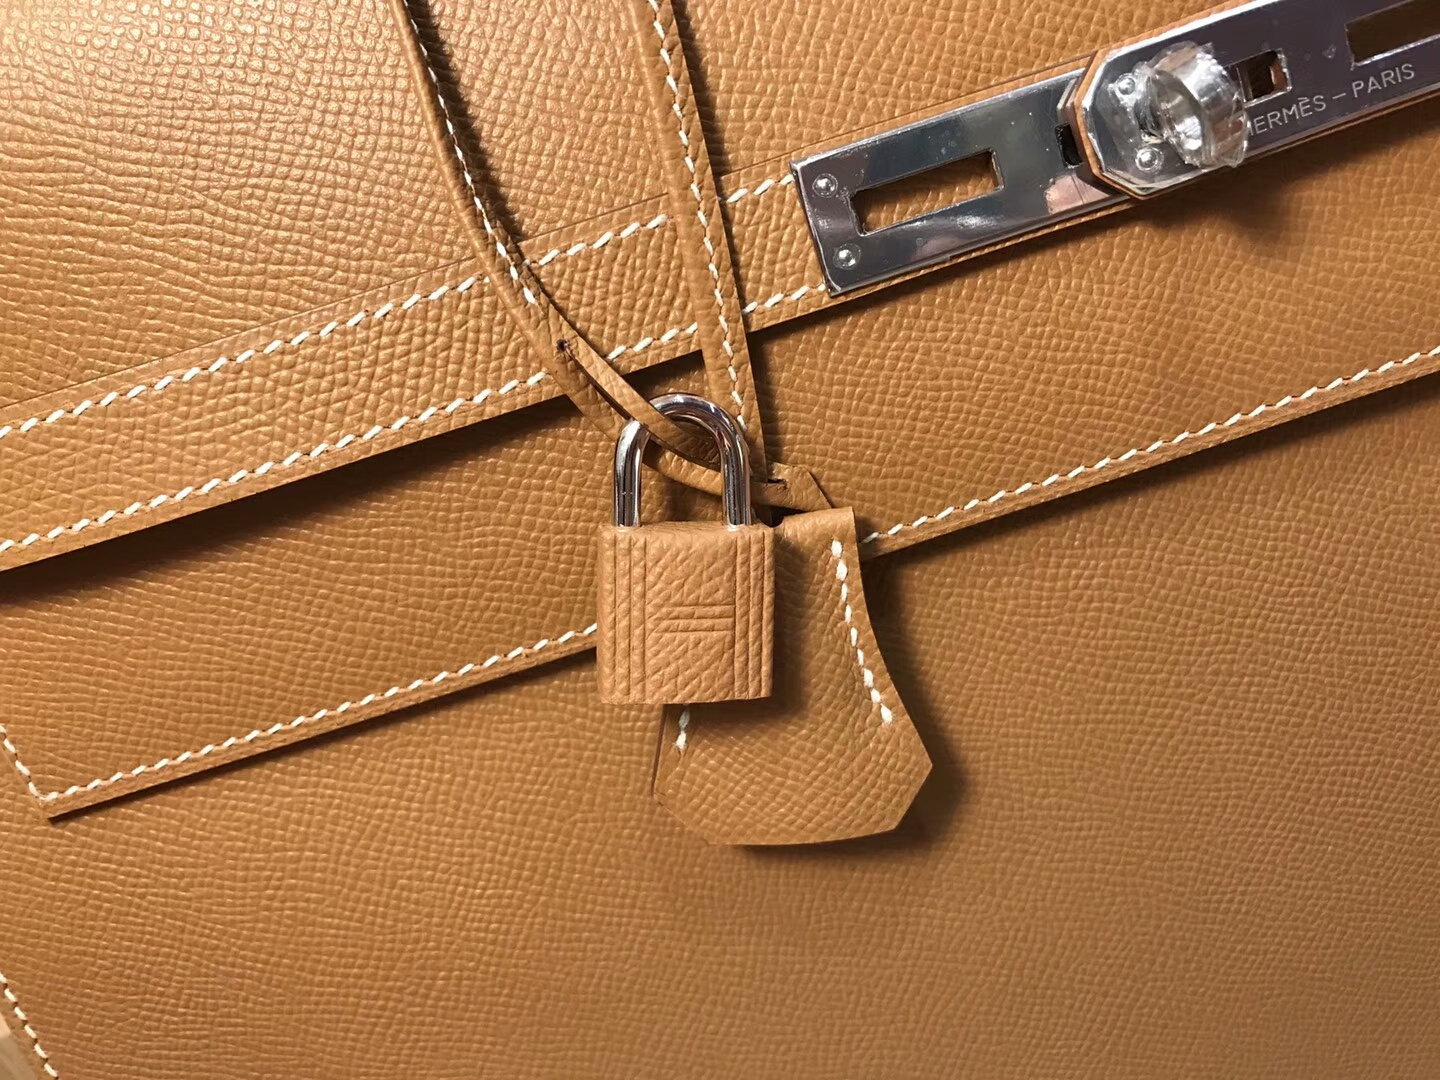 HERMES 爱马仕 男士公文包  CK37 金棕色 Gold 现货系列 配全套专柜原版包装 银扣